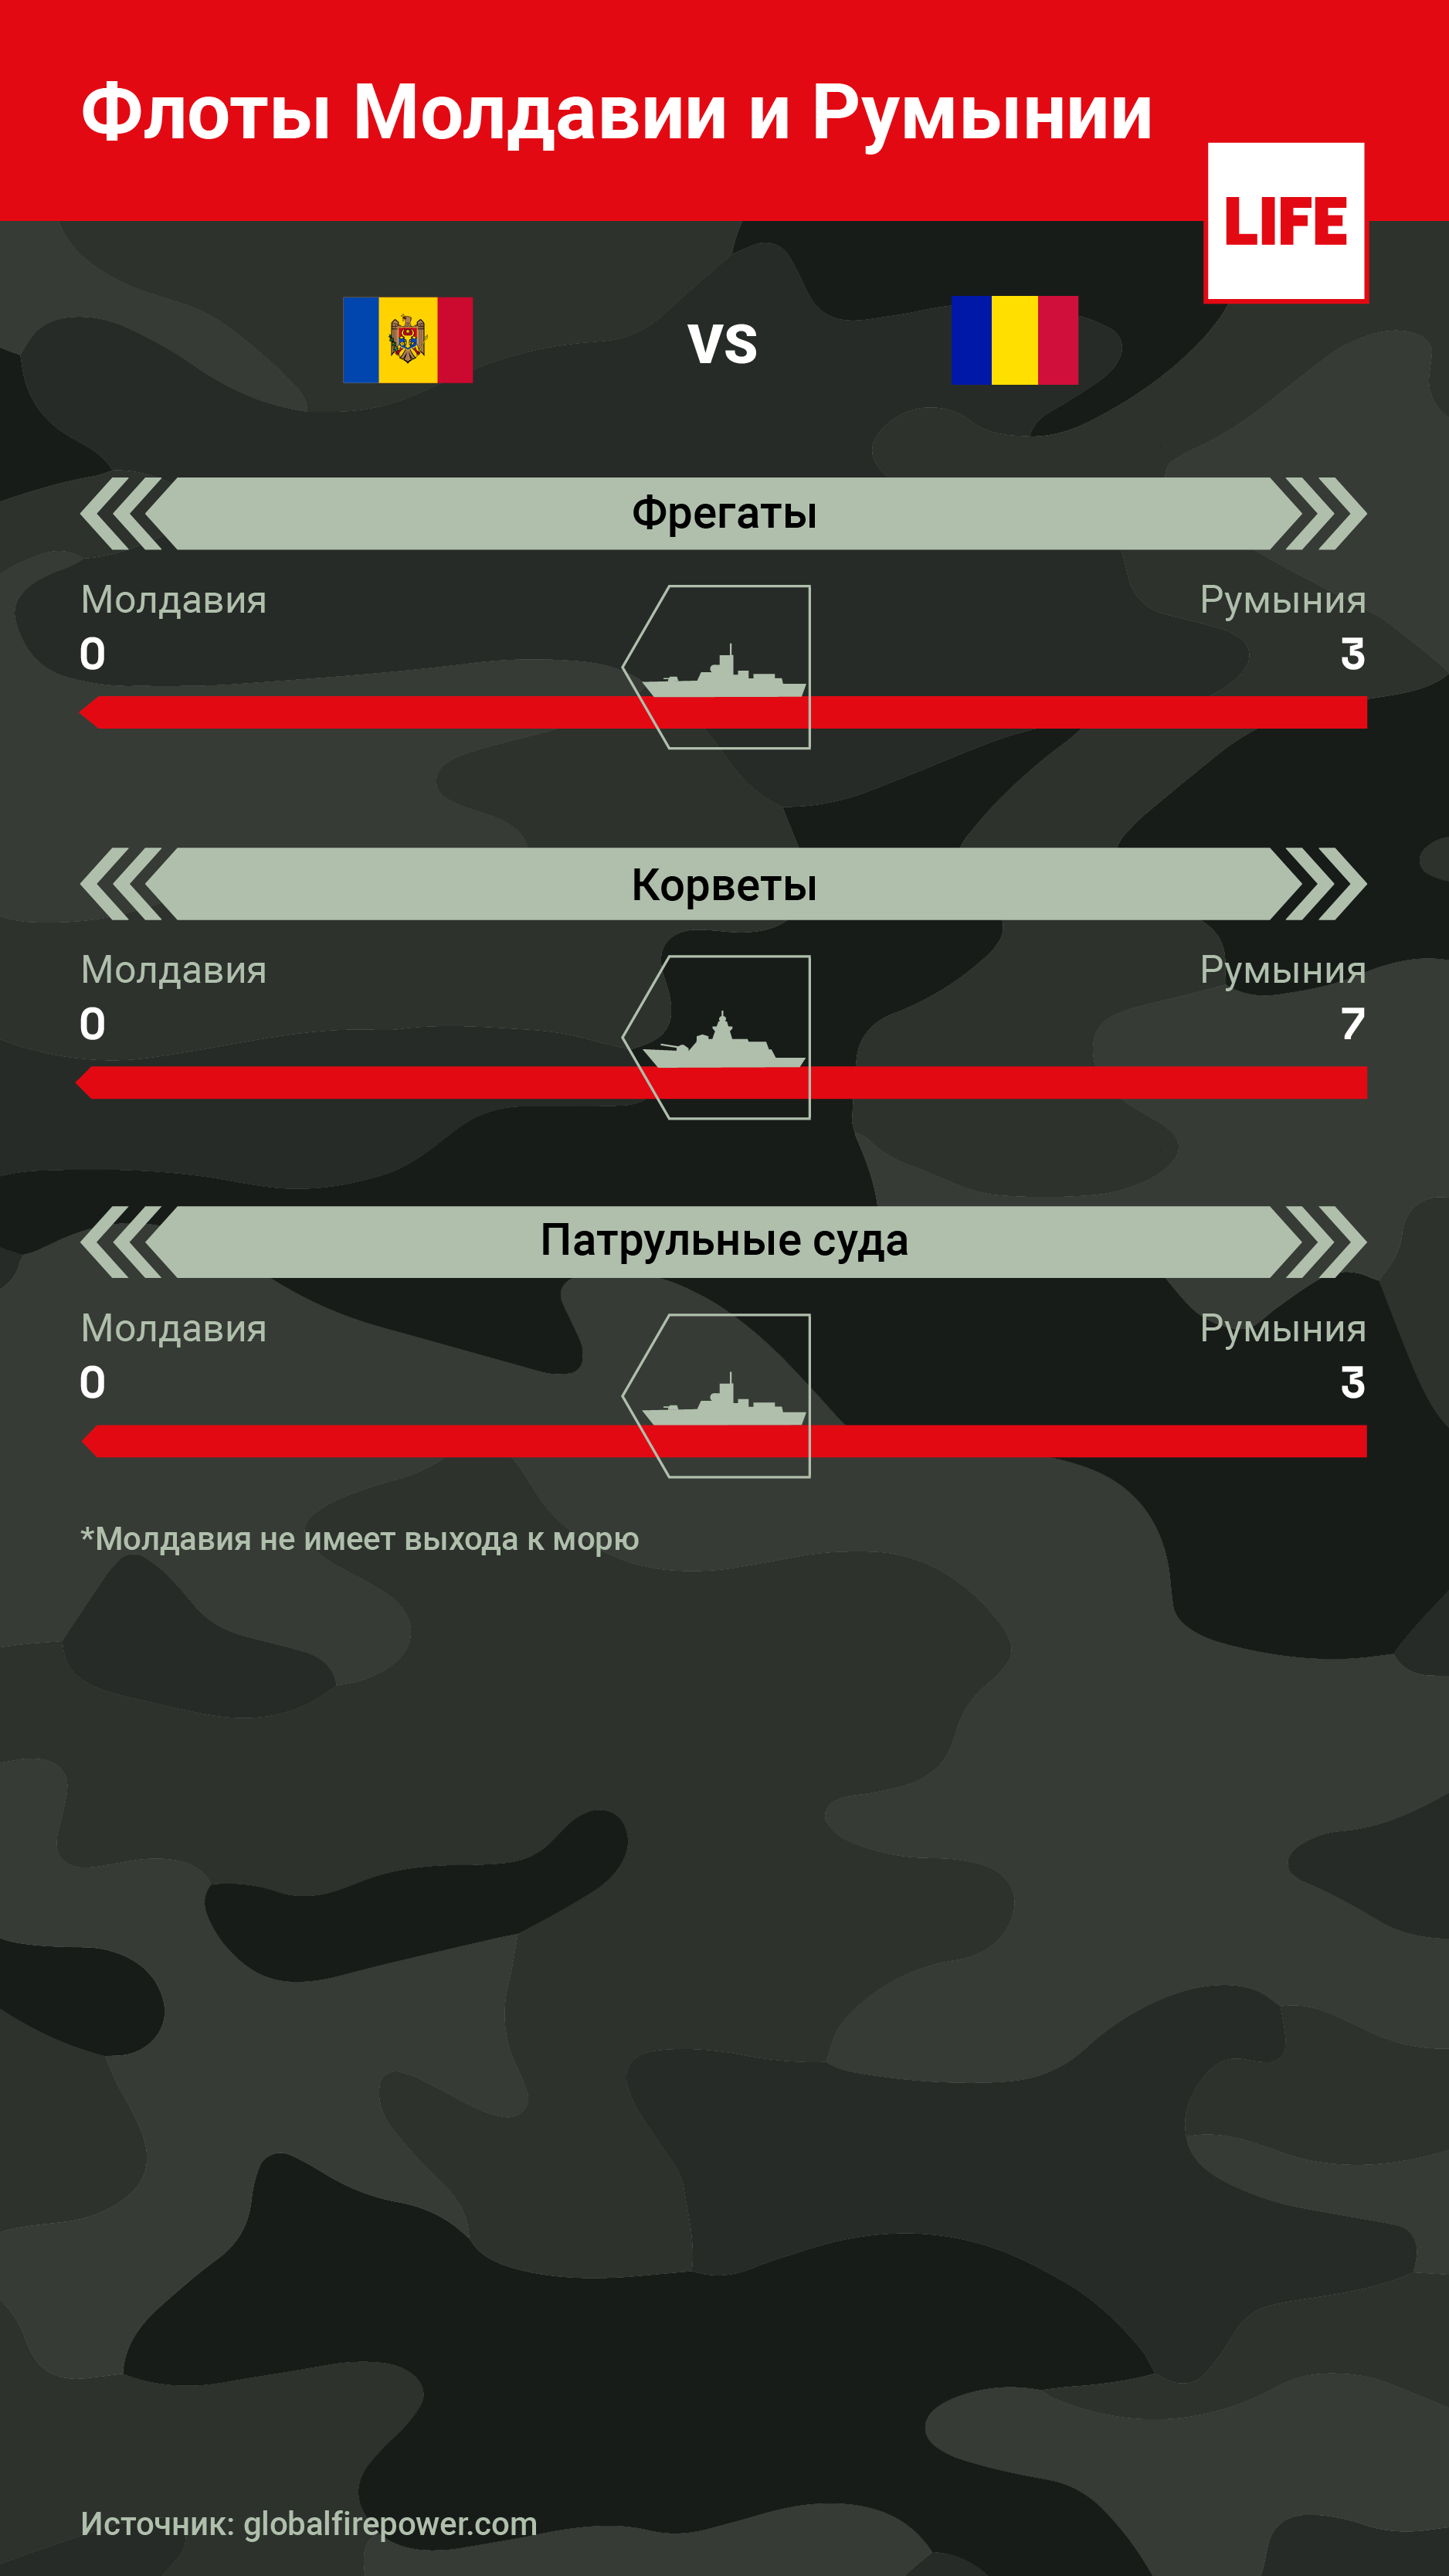 Флоты Молдавии и Румынии. Инфографика © LIFE